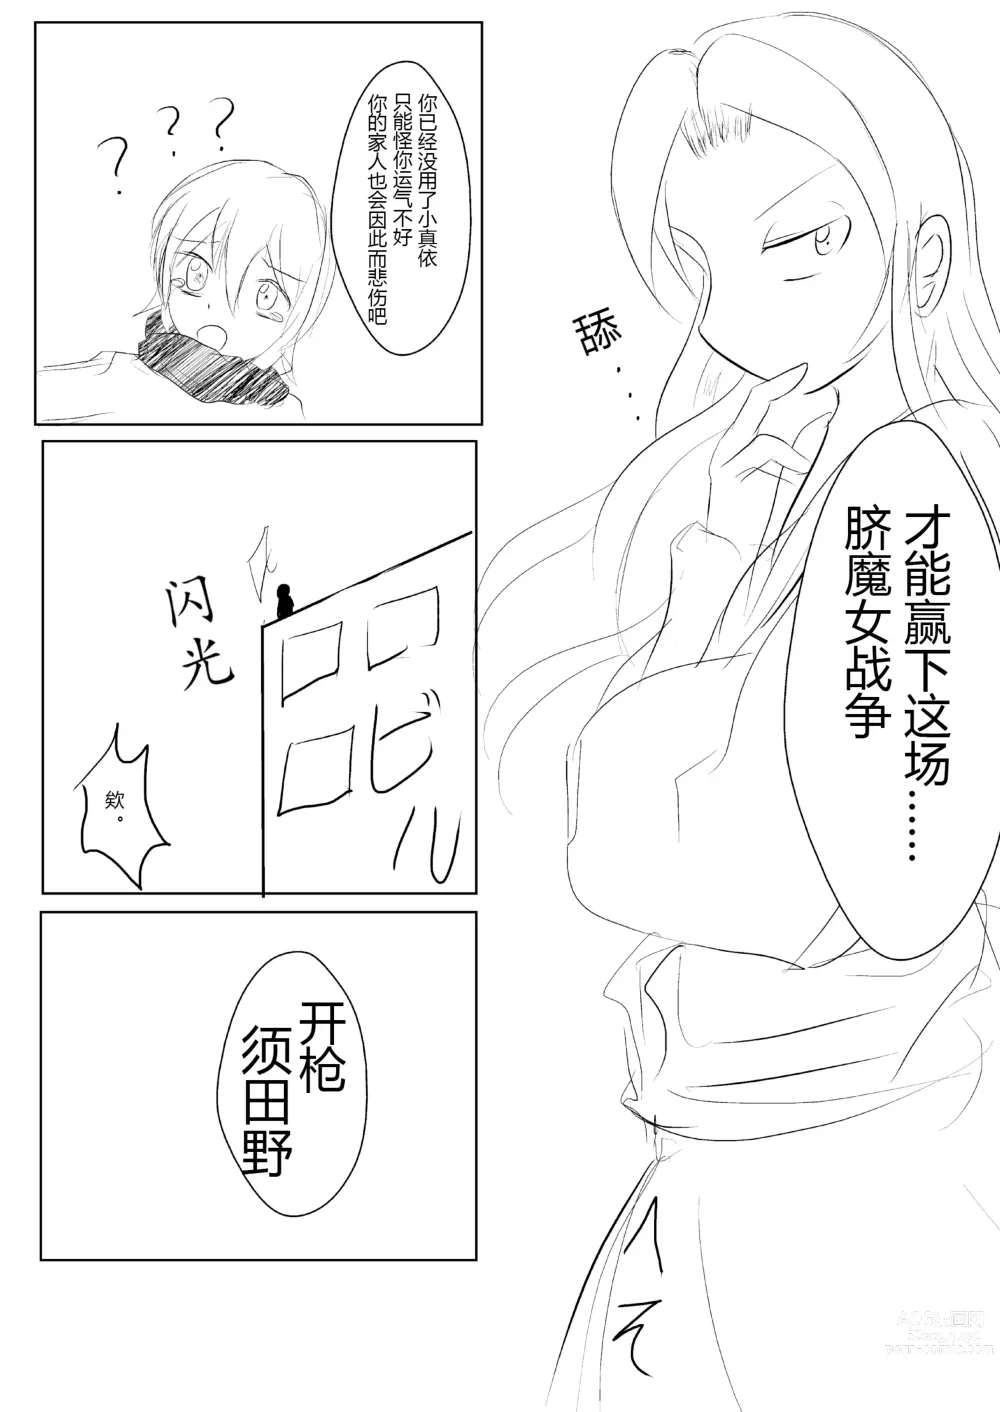 Page 8 of doujinshi hesomazixyo1